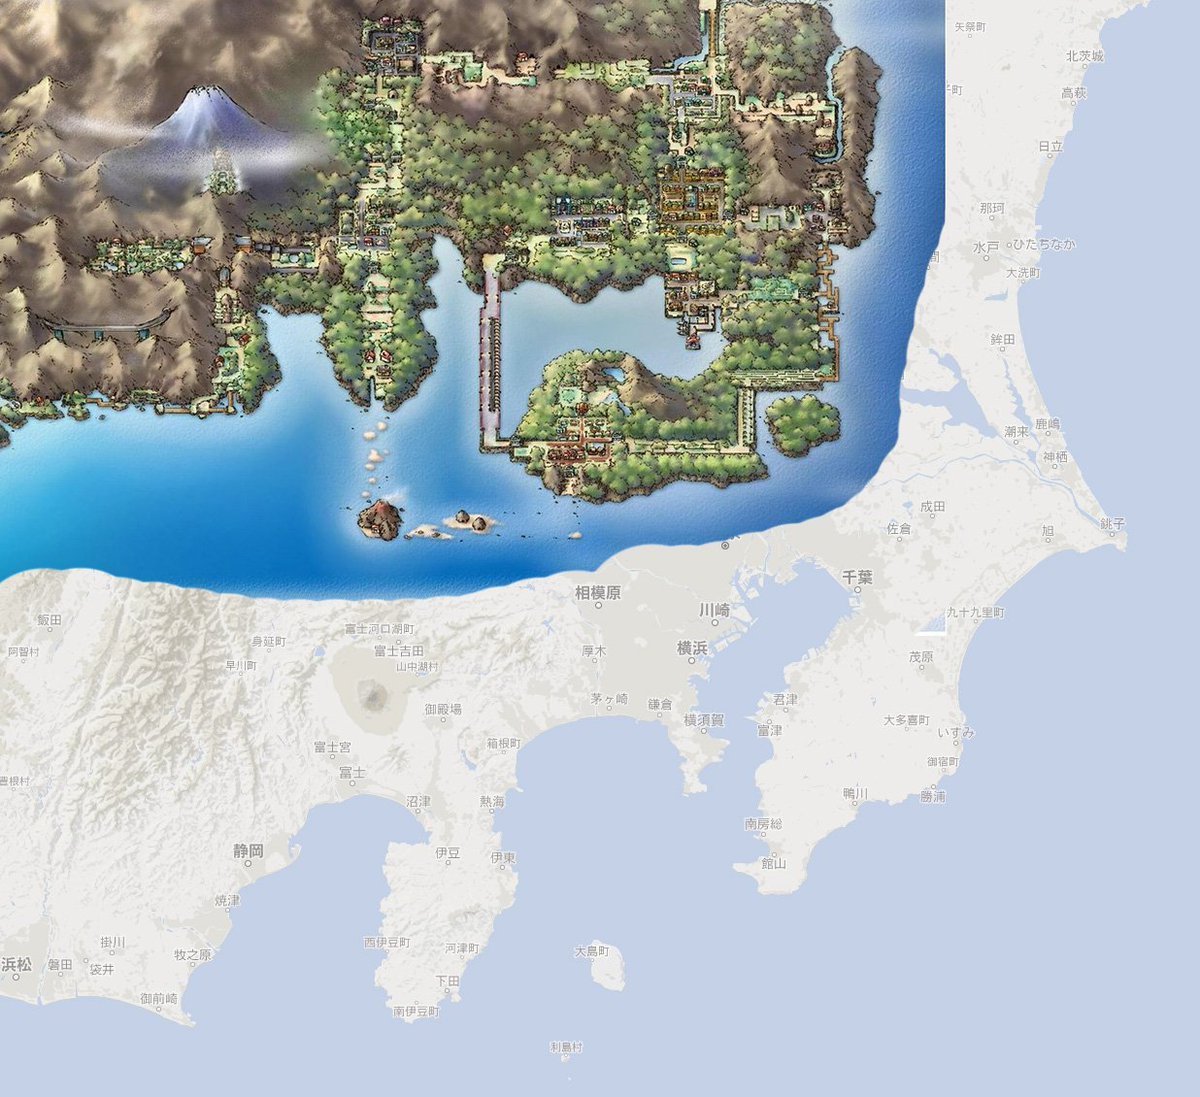 日本地図をポケモン地図に置き換えてたらこうなるらしい 本家版 Togetter